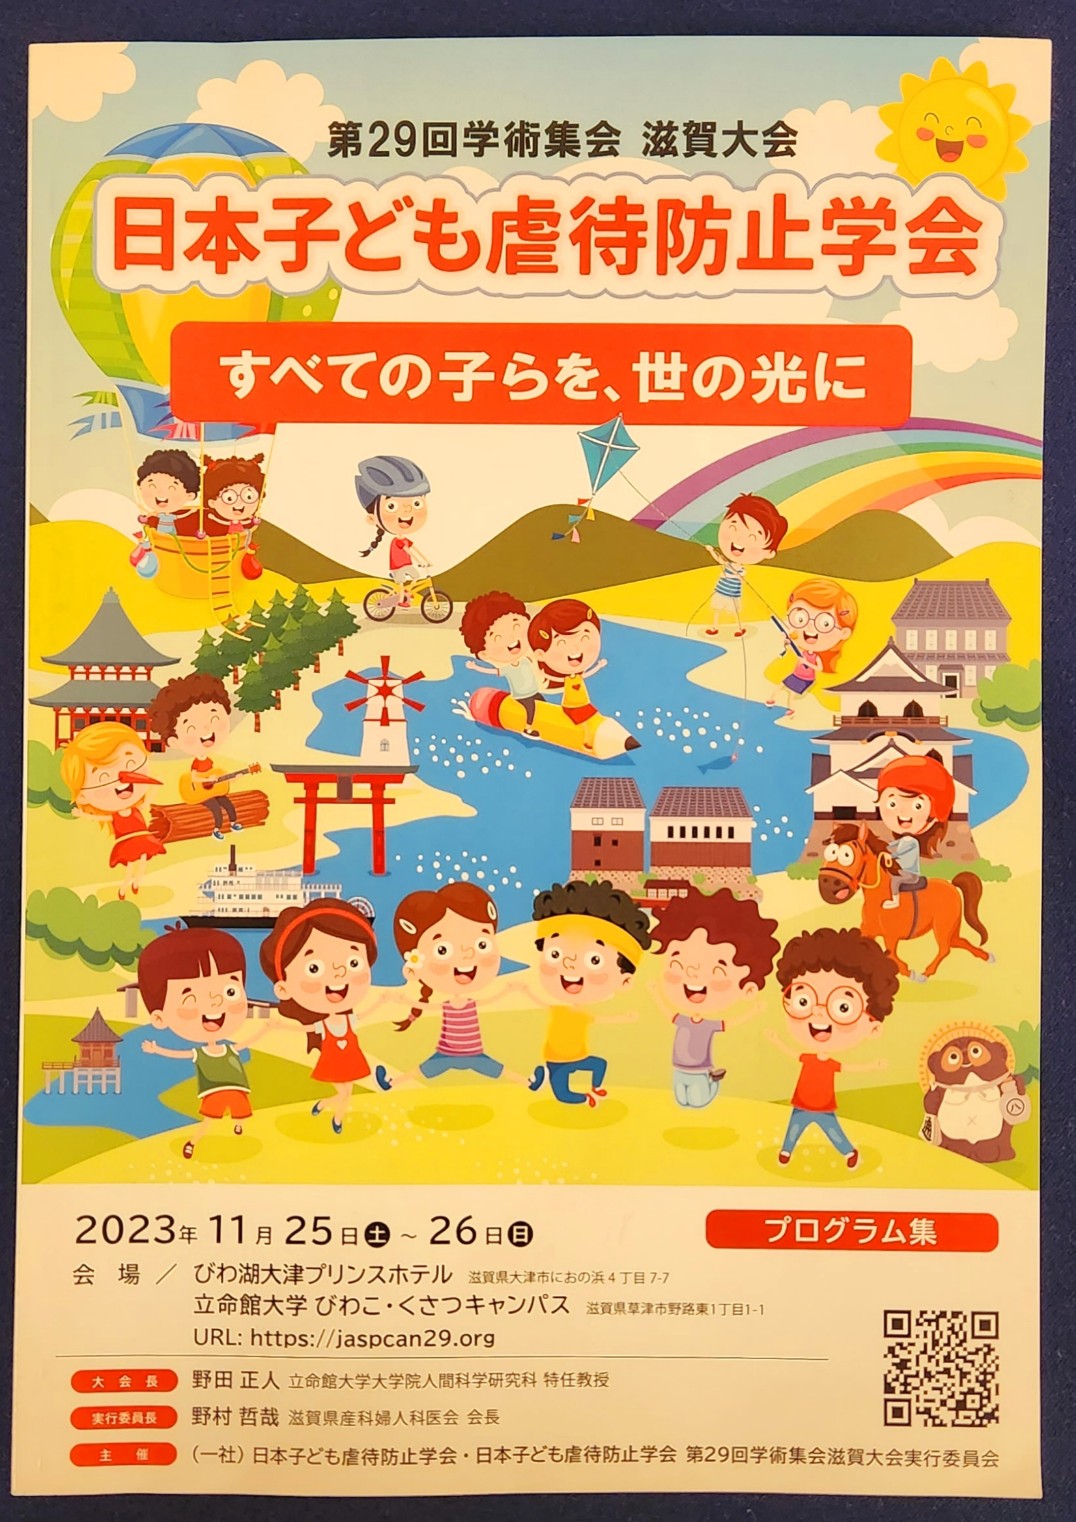 入舟寮職員2名が「第29回日本子ども虐待防止学会」で学術発表を行いました。